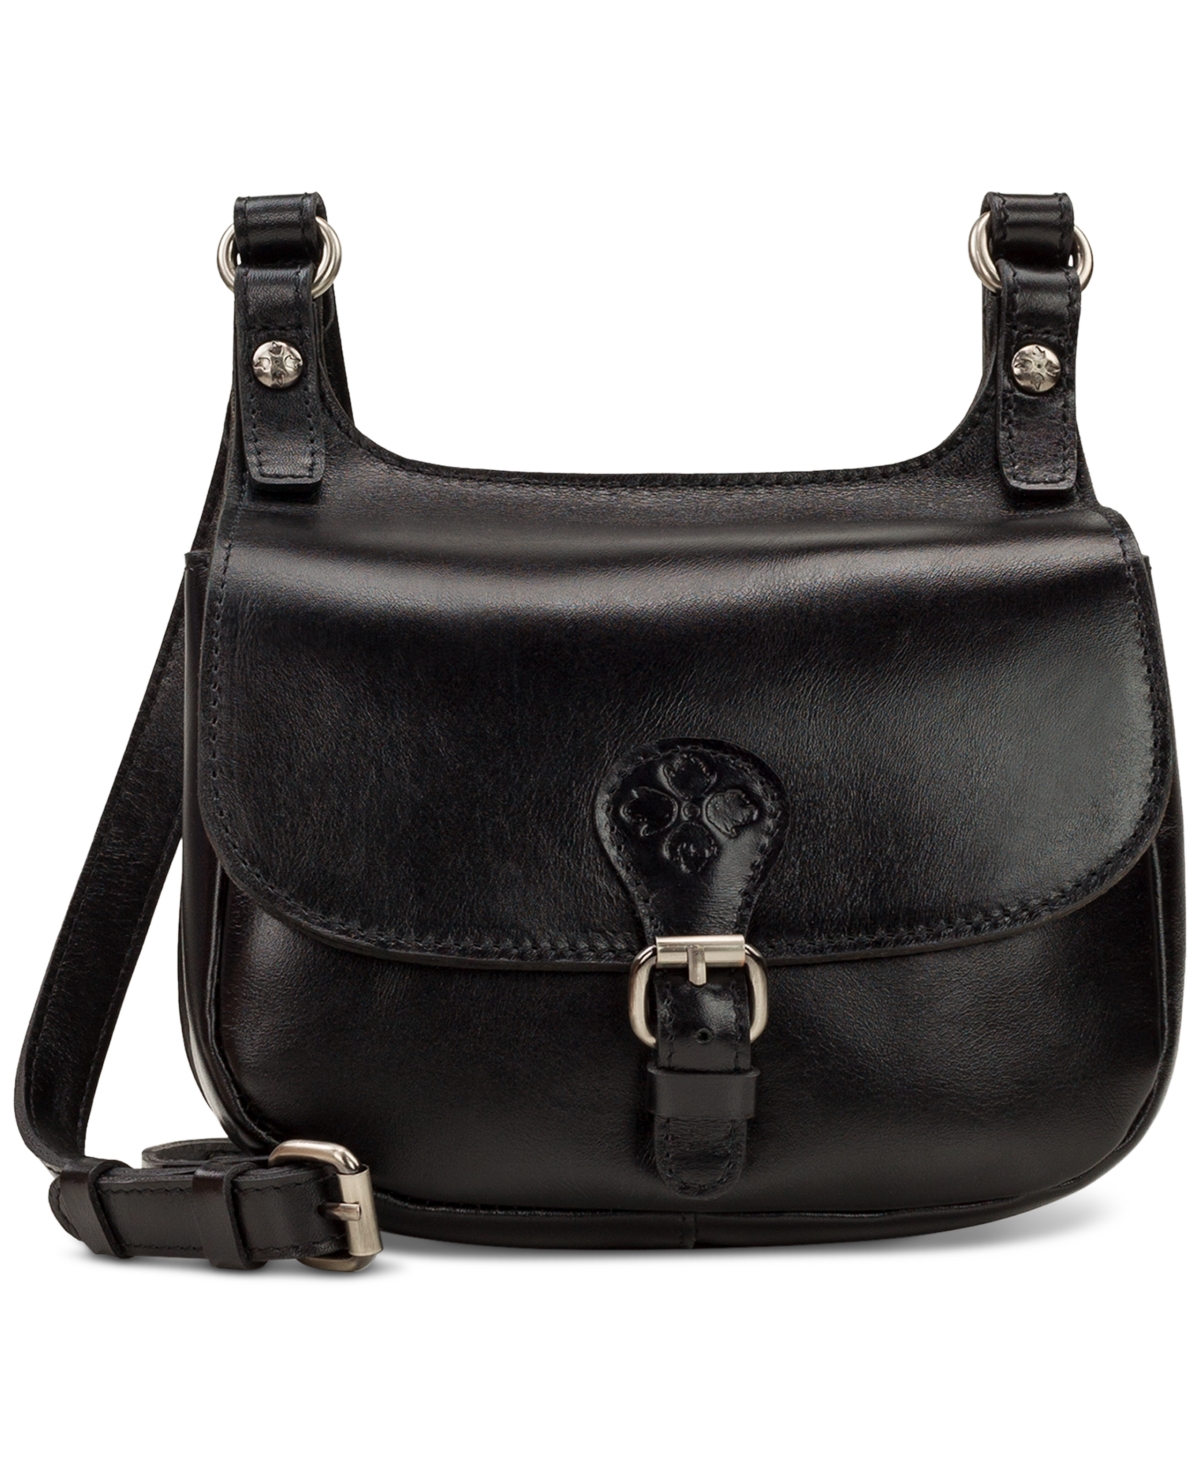 Patricia Nash Linny Leather Saddle Bag In Black